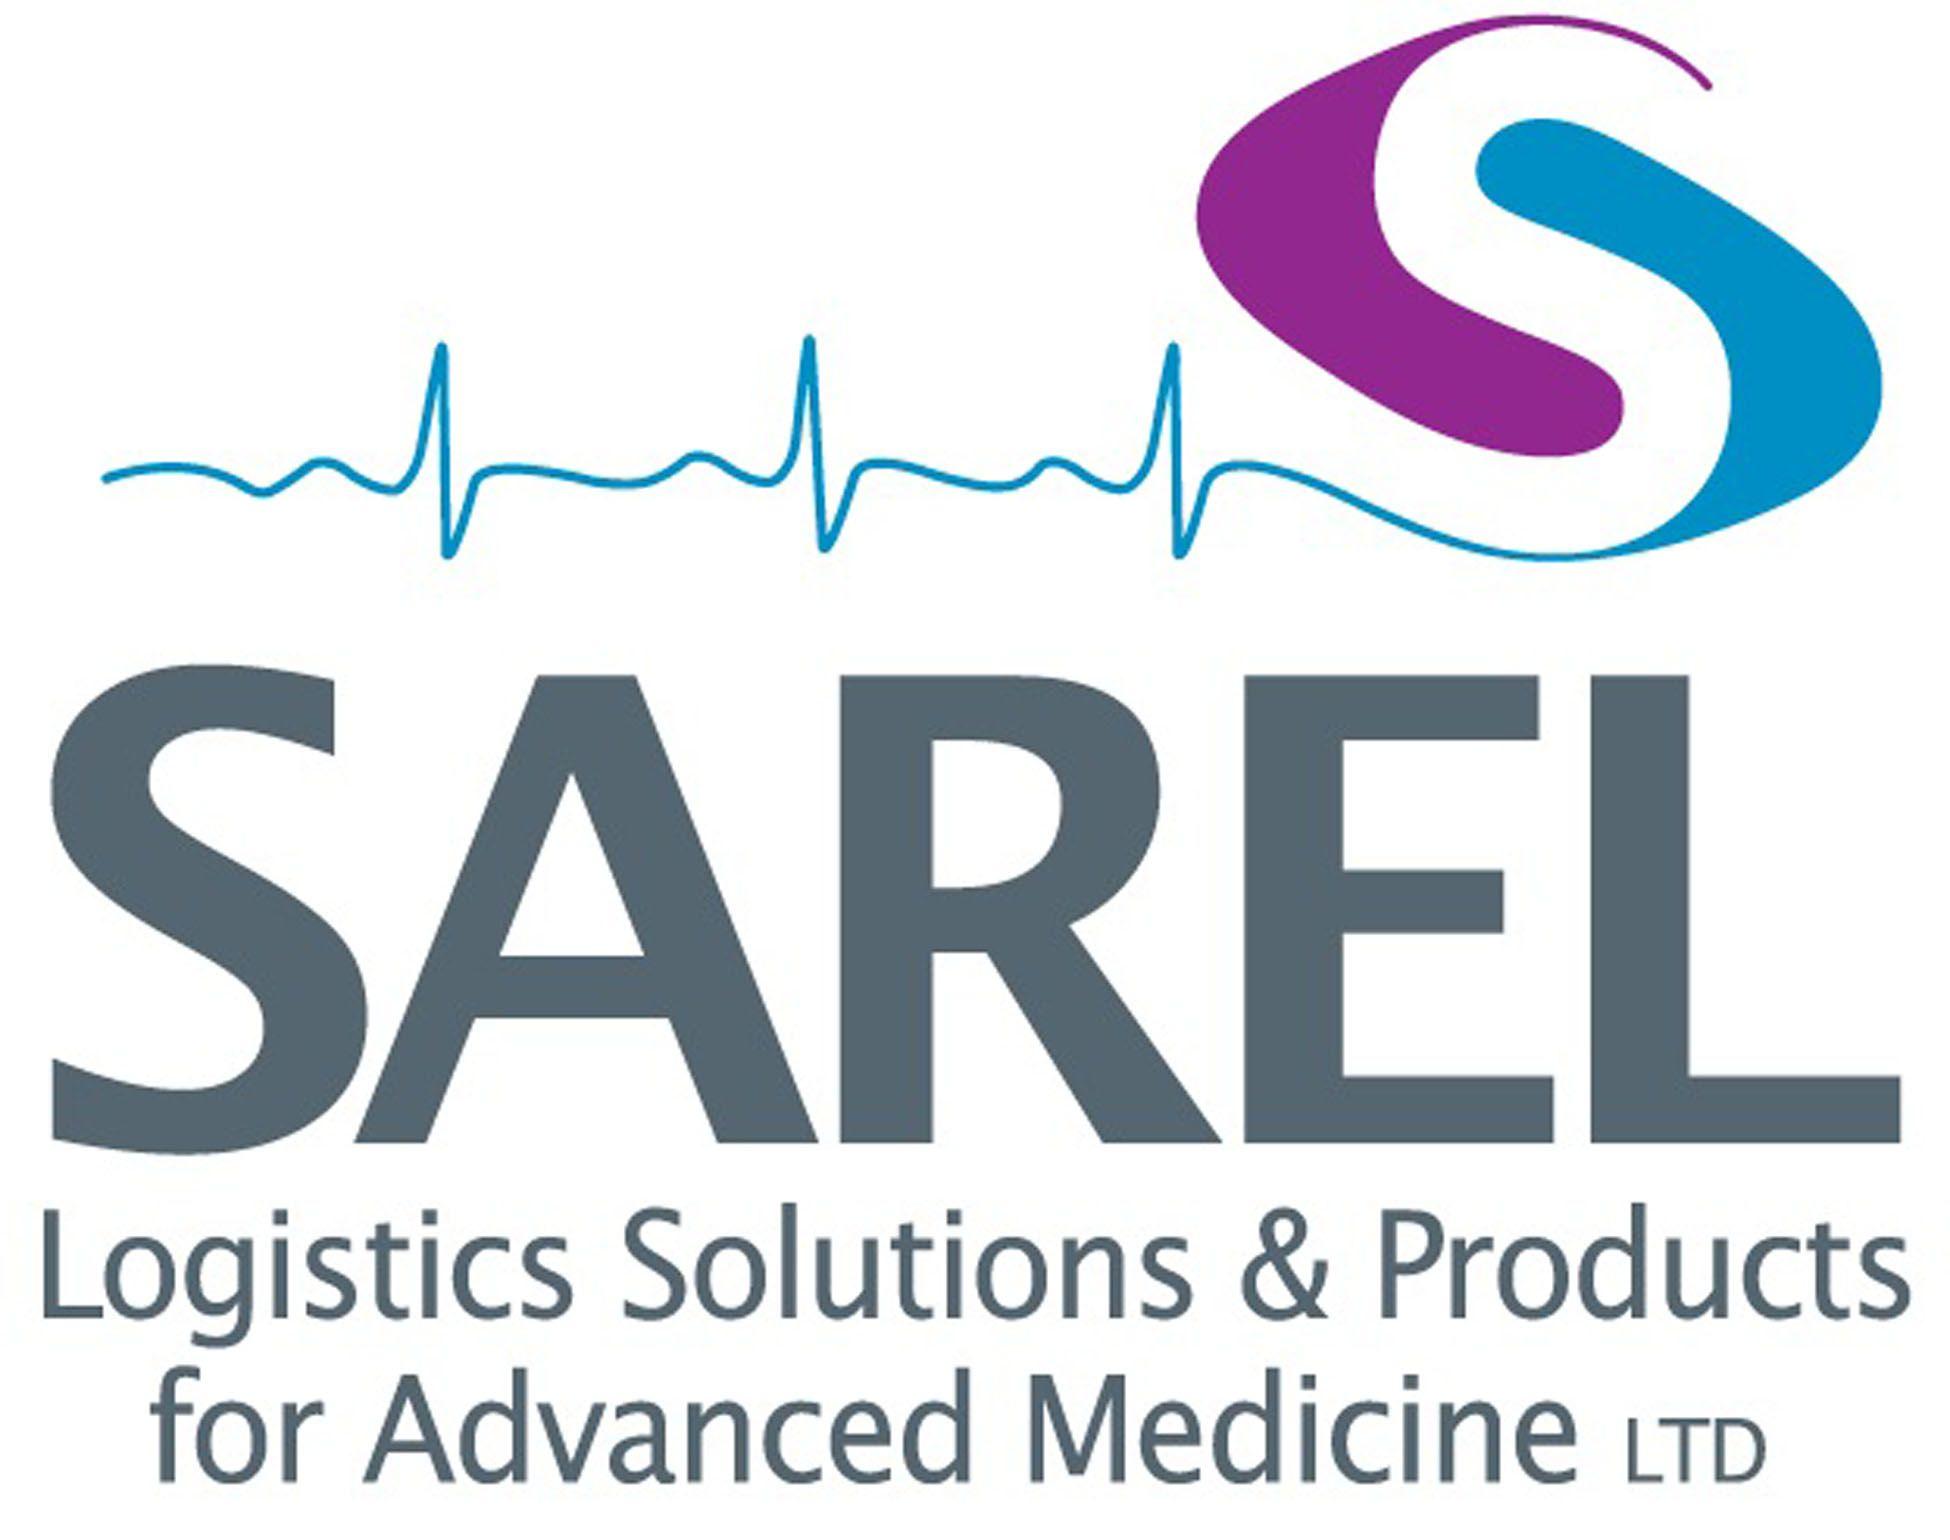 Advanced Medical Company Logo - SAREL Logistics Solutions & Products for Advanced Medicine | BDI